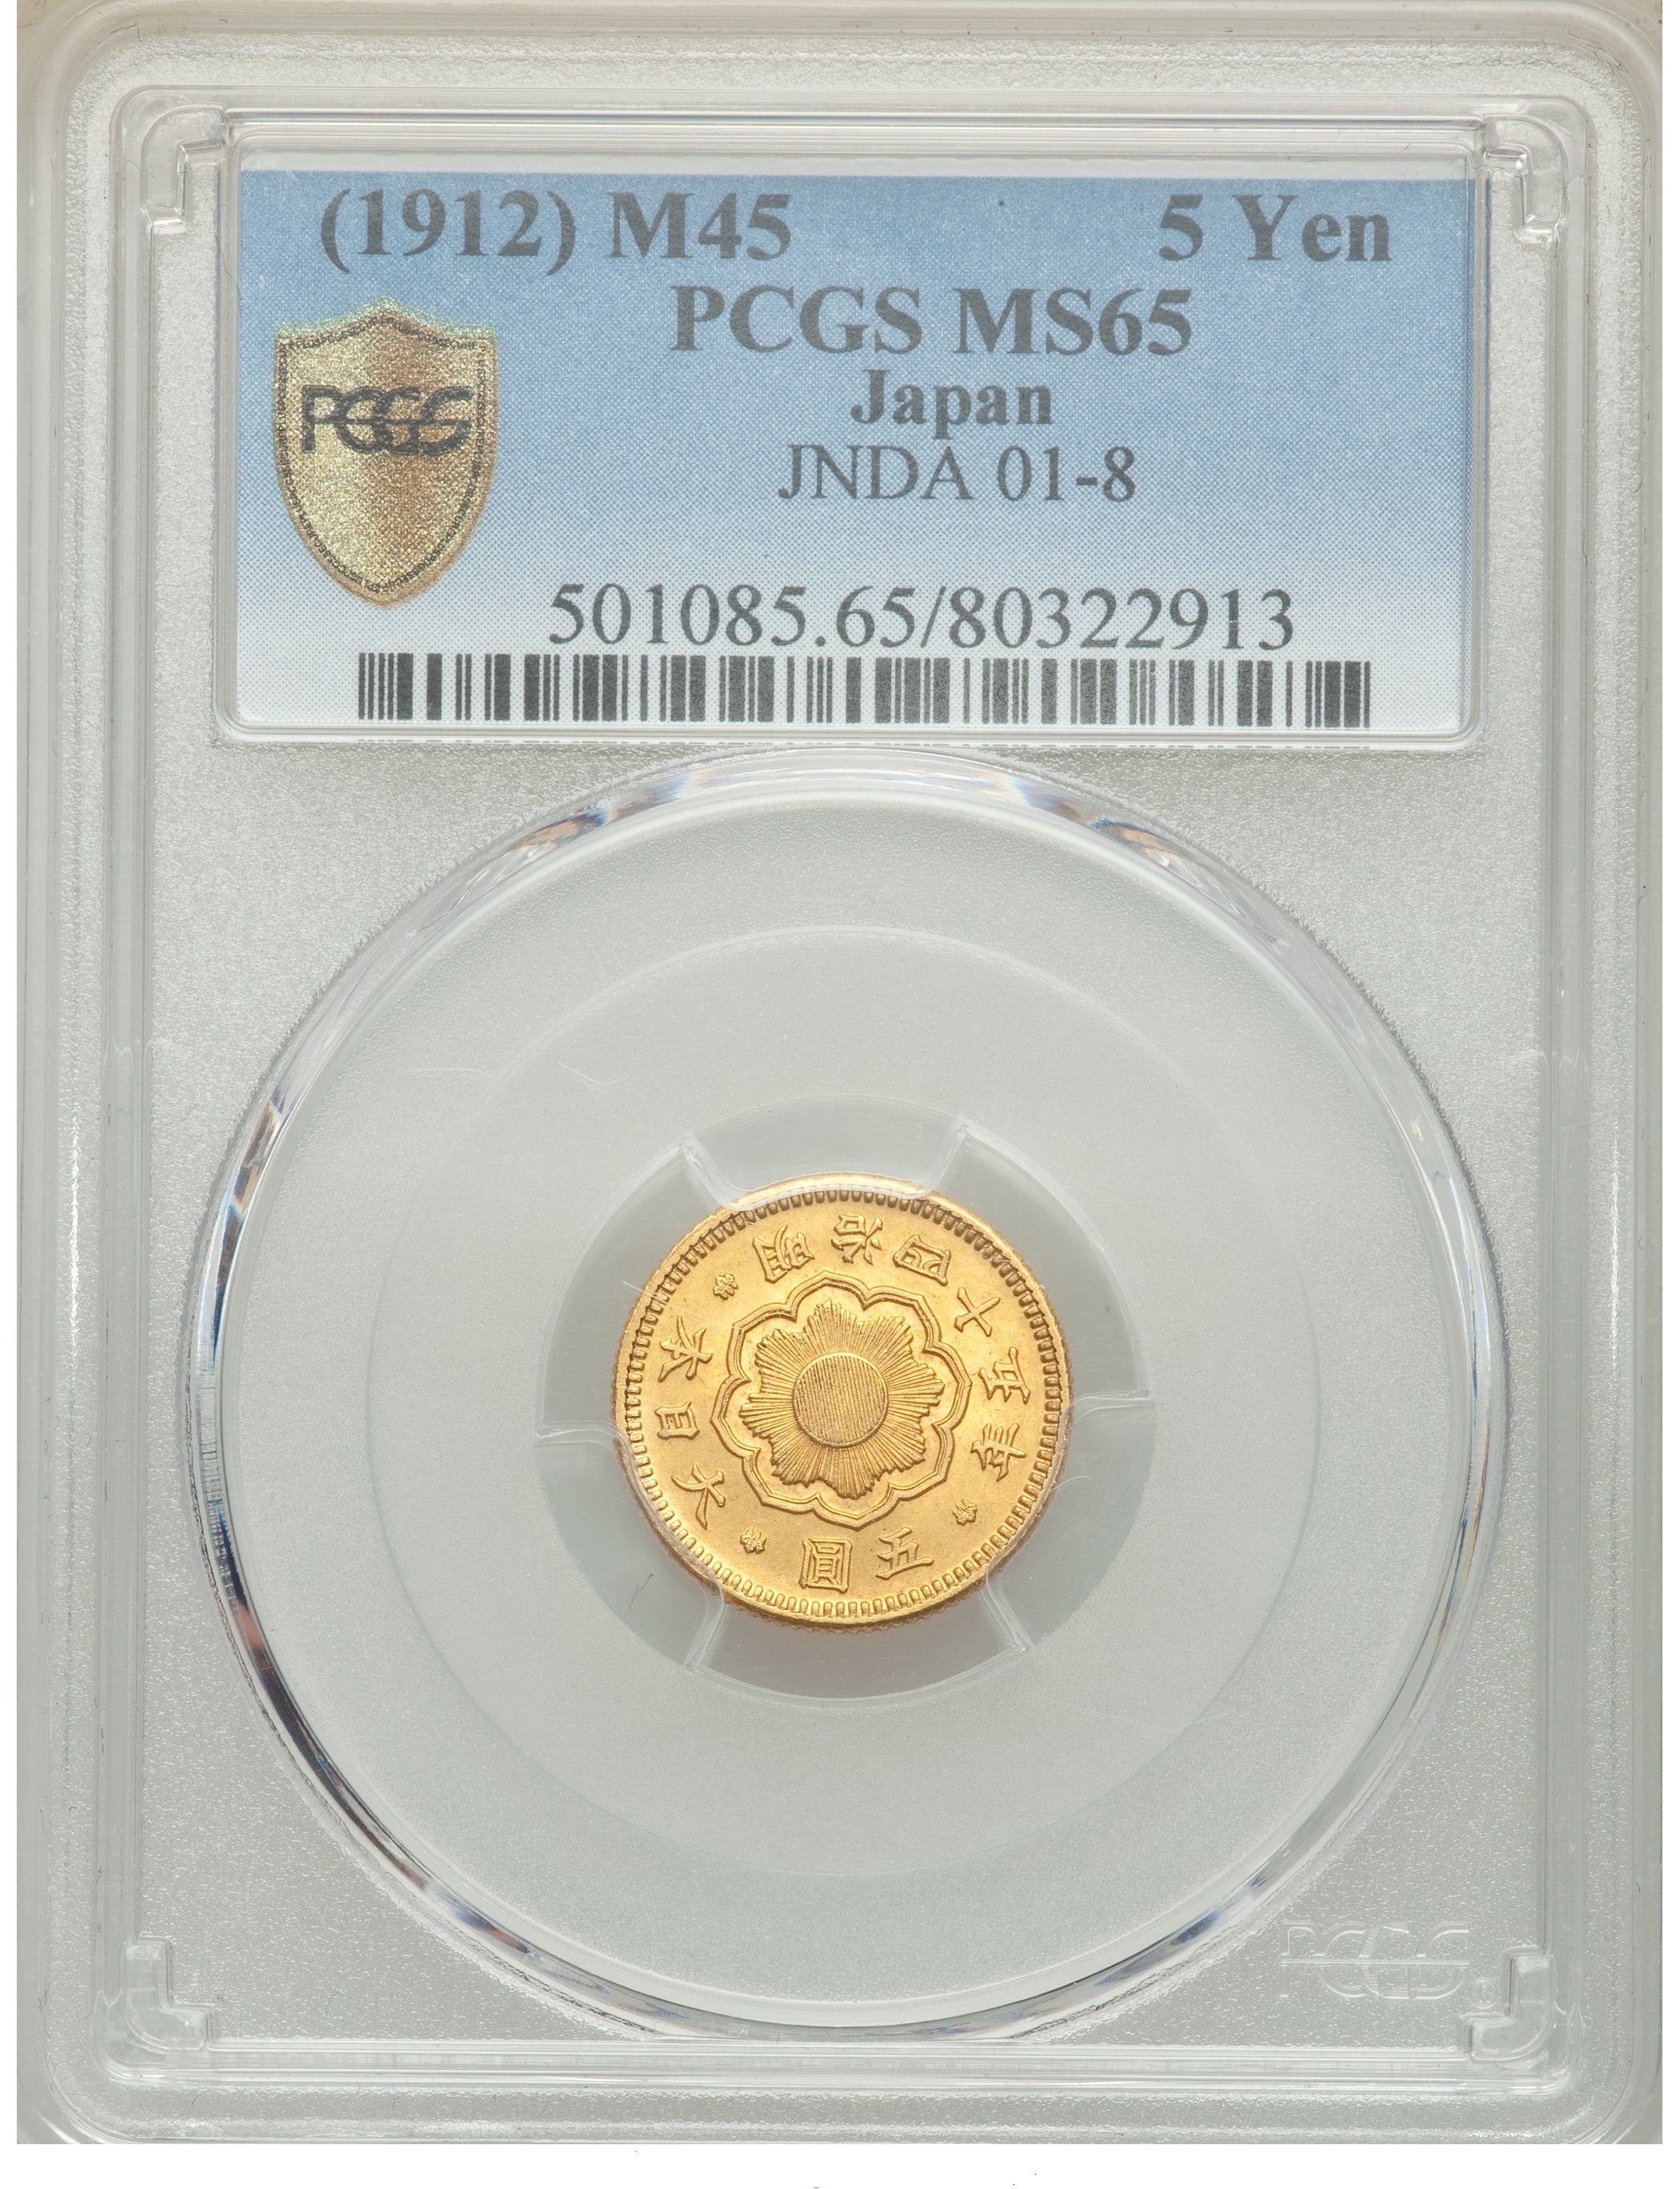 G046 1912 Meiji gold 5 Yen Year 45, PCGS MS65, KM-Y33, JNDA 01-8